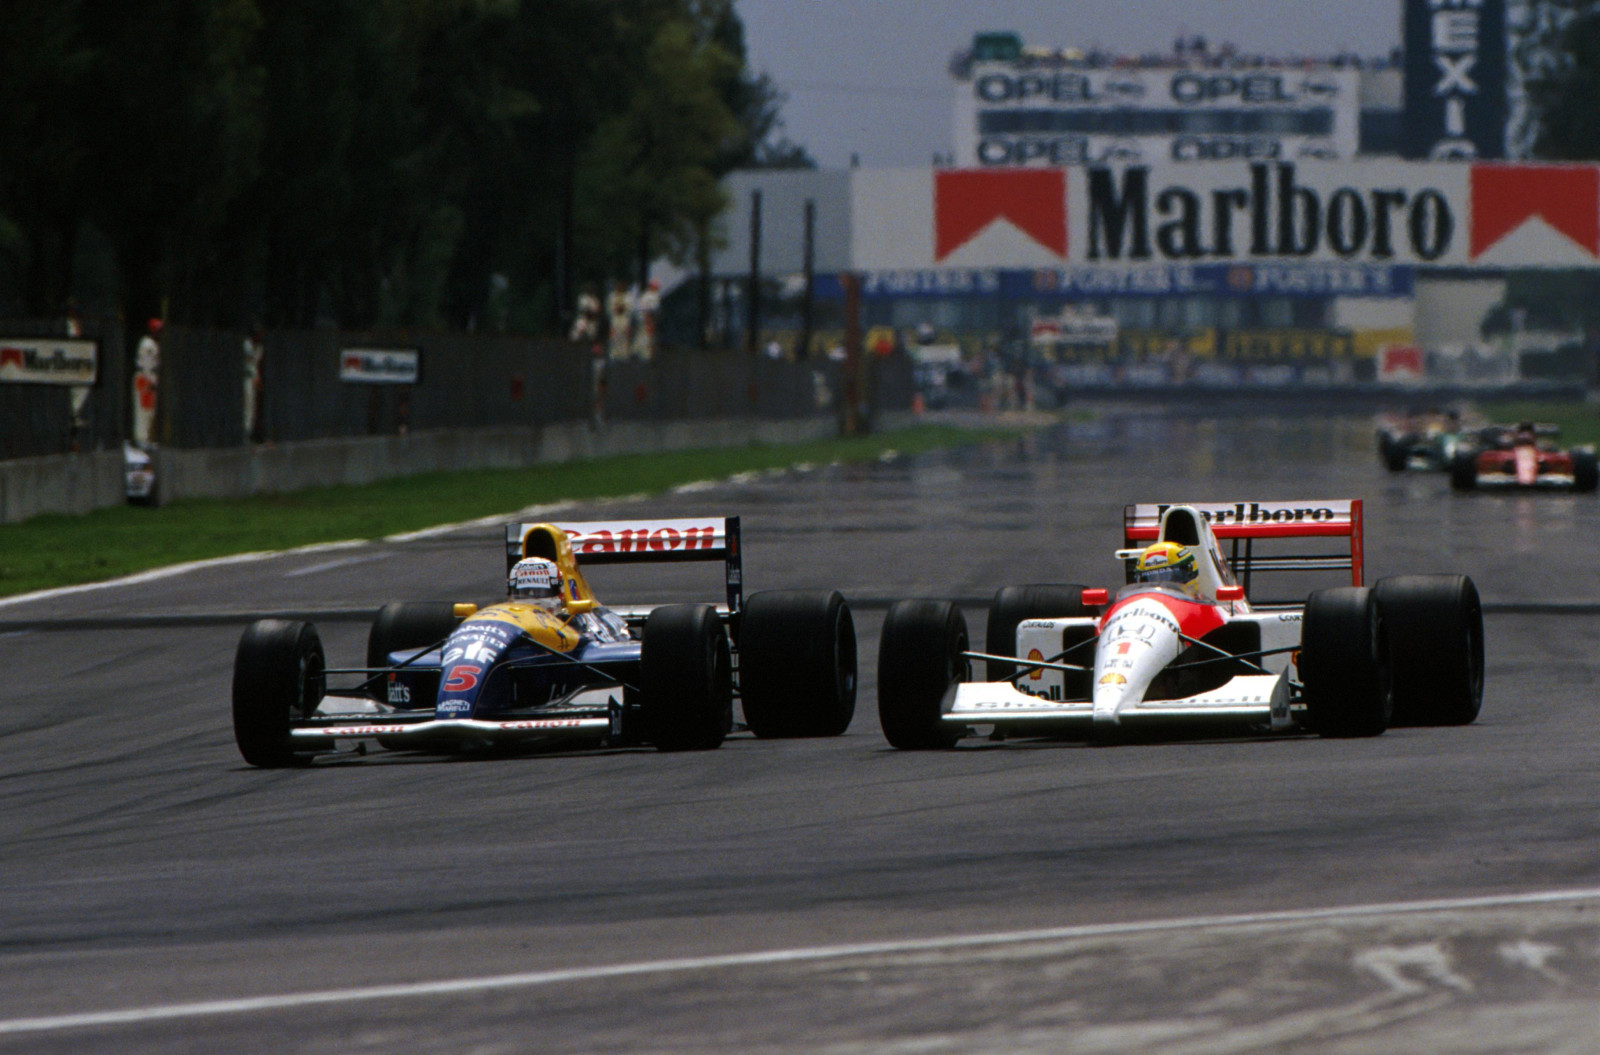 ตำนาน, แม็คลาเรน, บัว, สูตร 1, 1990, 1994, 1988, Ayrton Senna